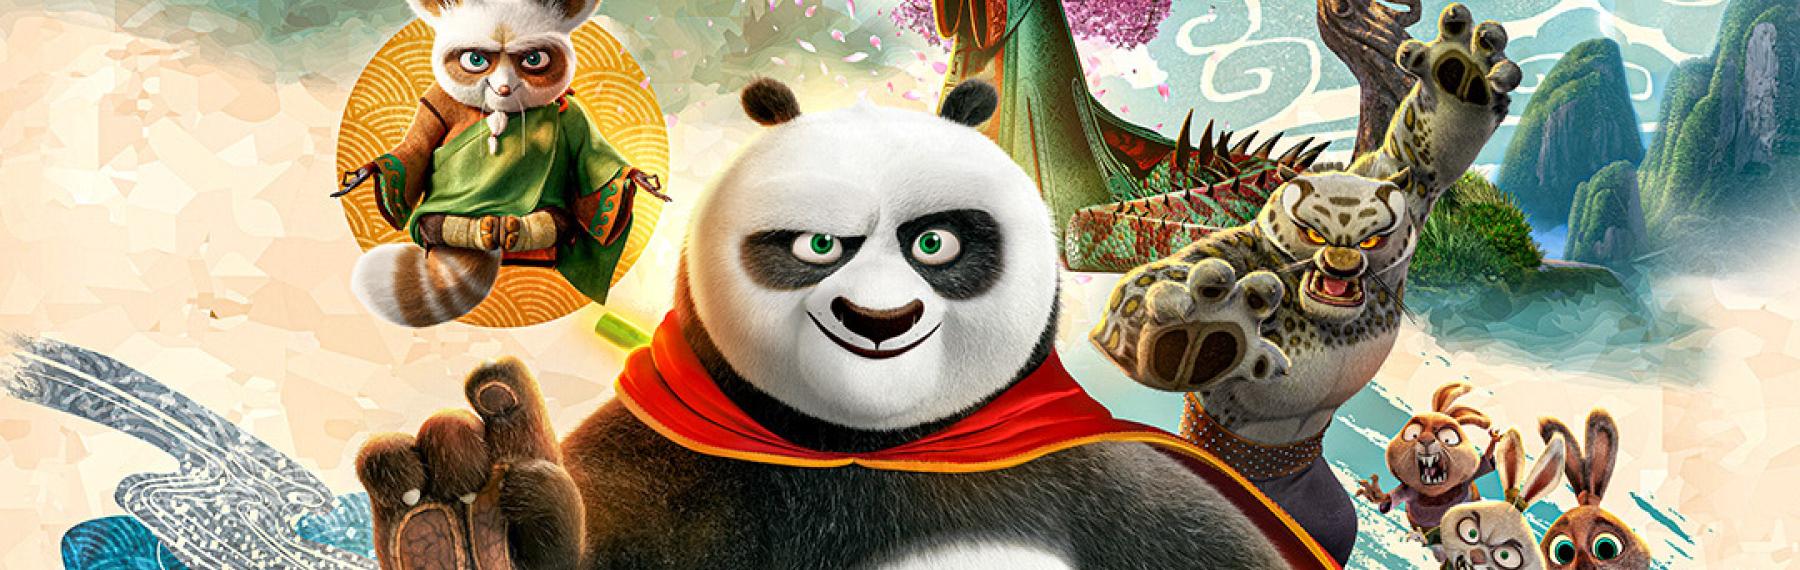 Kung Fu Panda bild